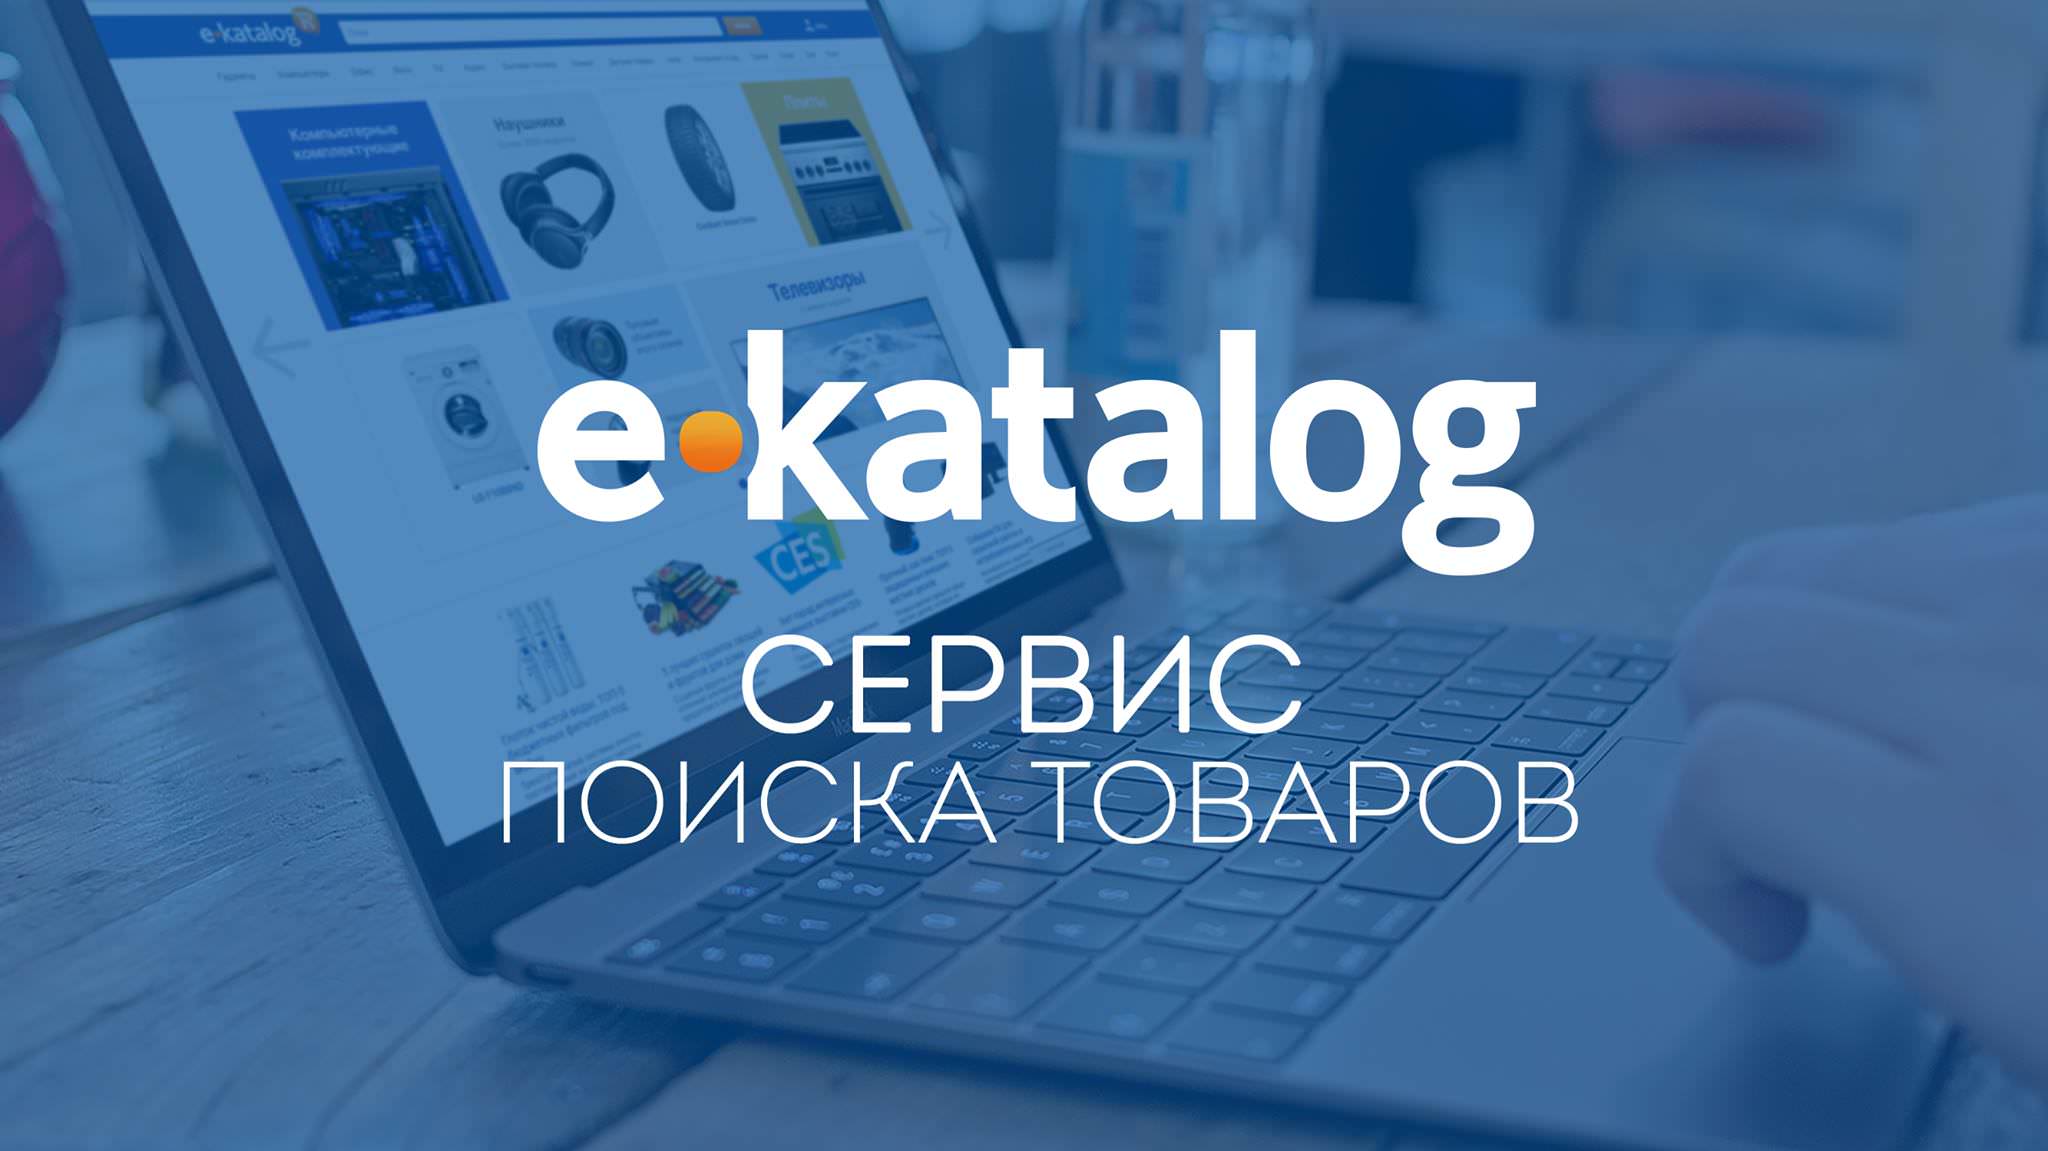 66875 e-Katalog прекратил работу в России, присвоив себе деньги покупателей и магазинов